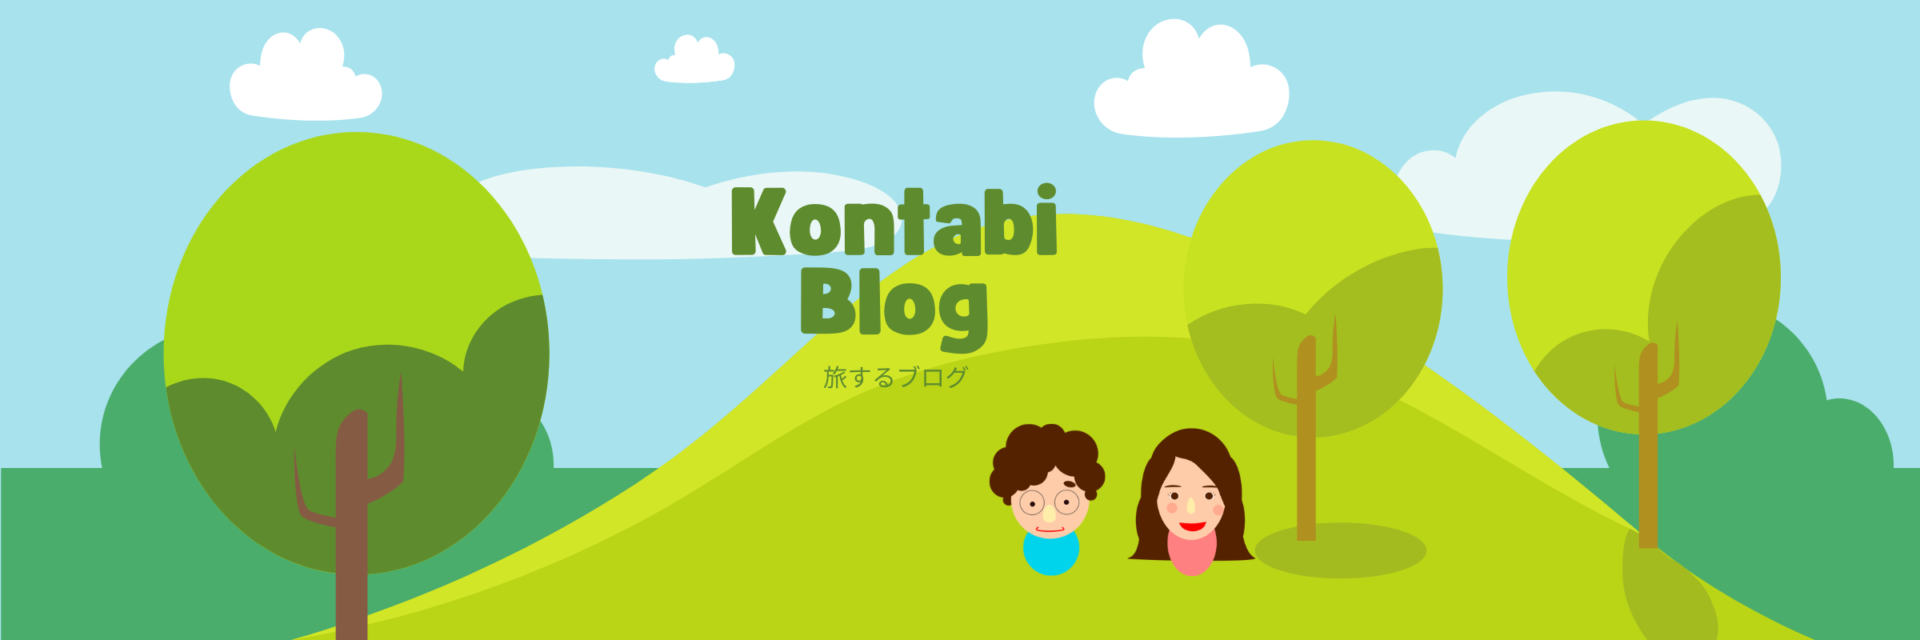 Kontabi Blog